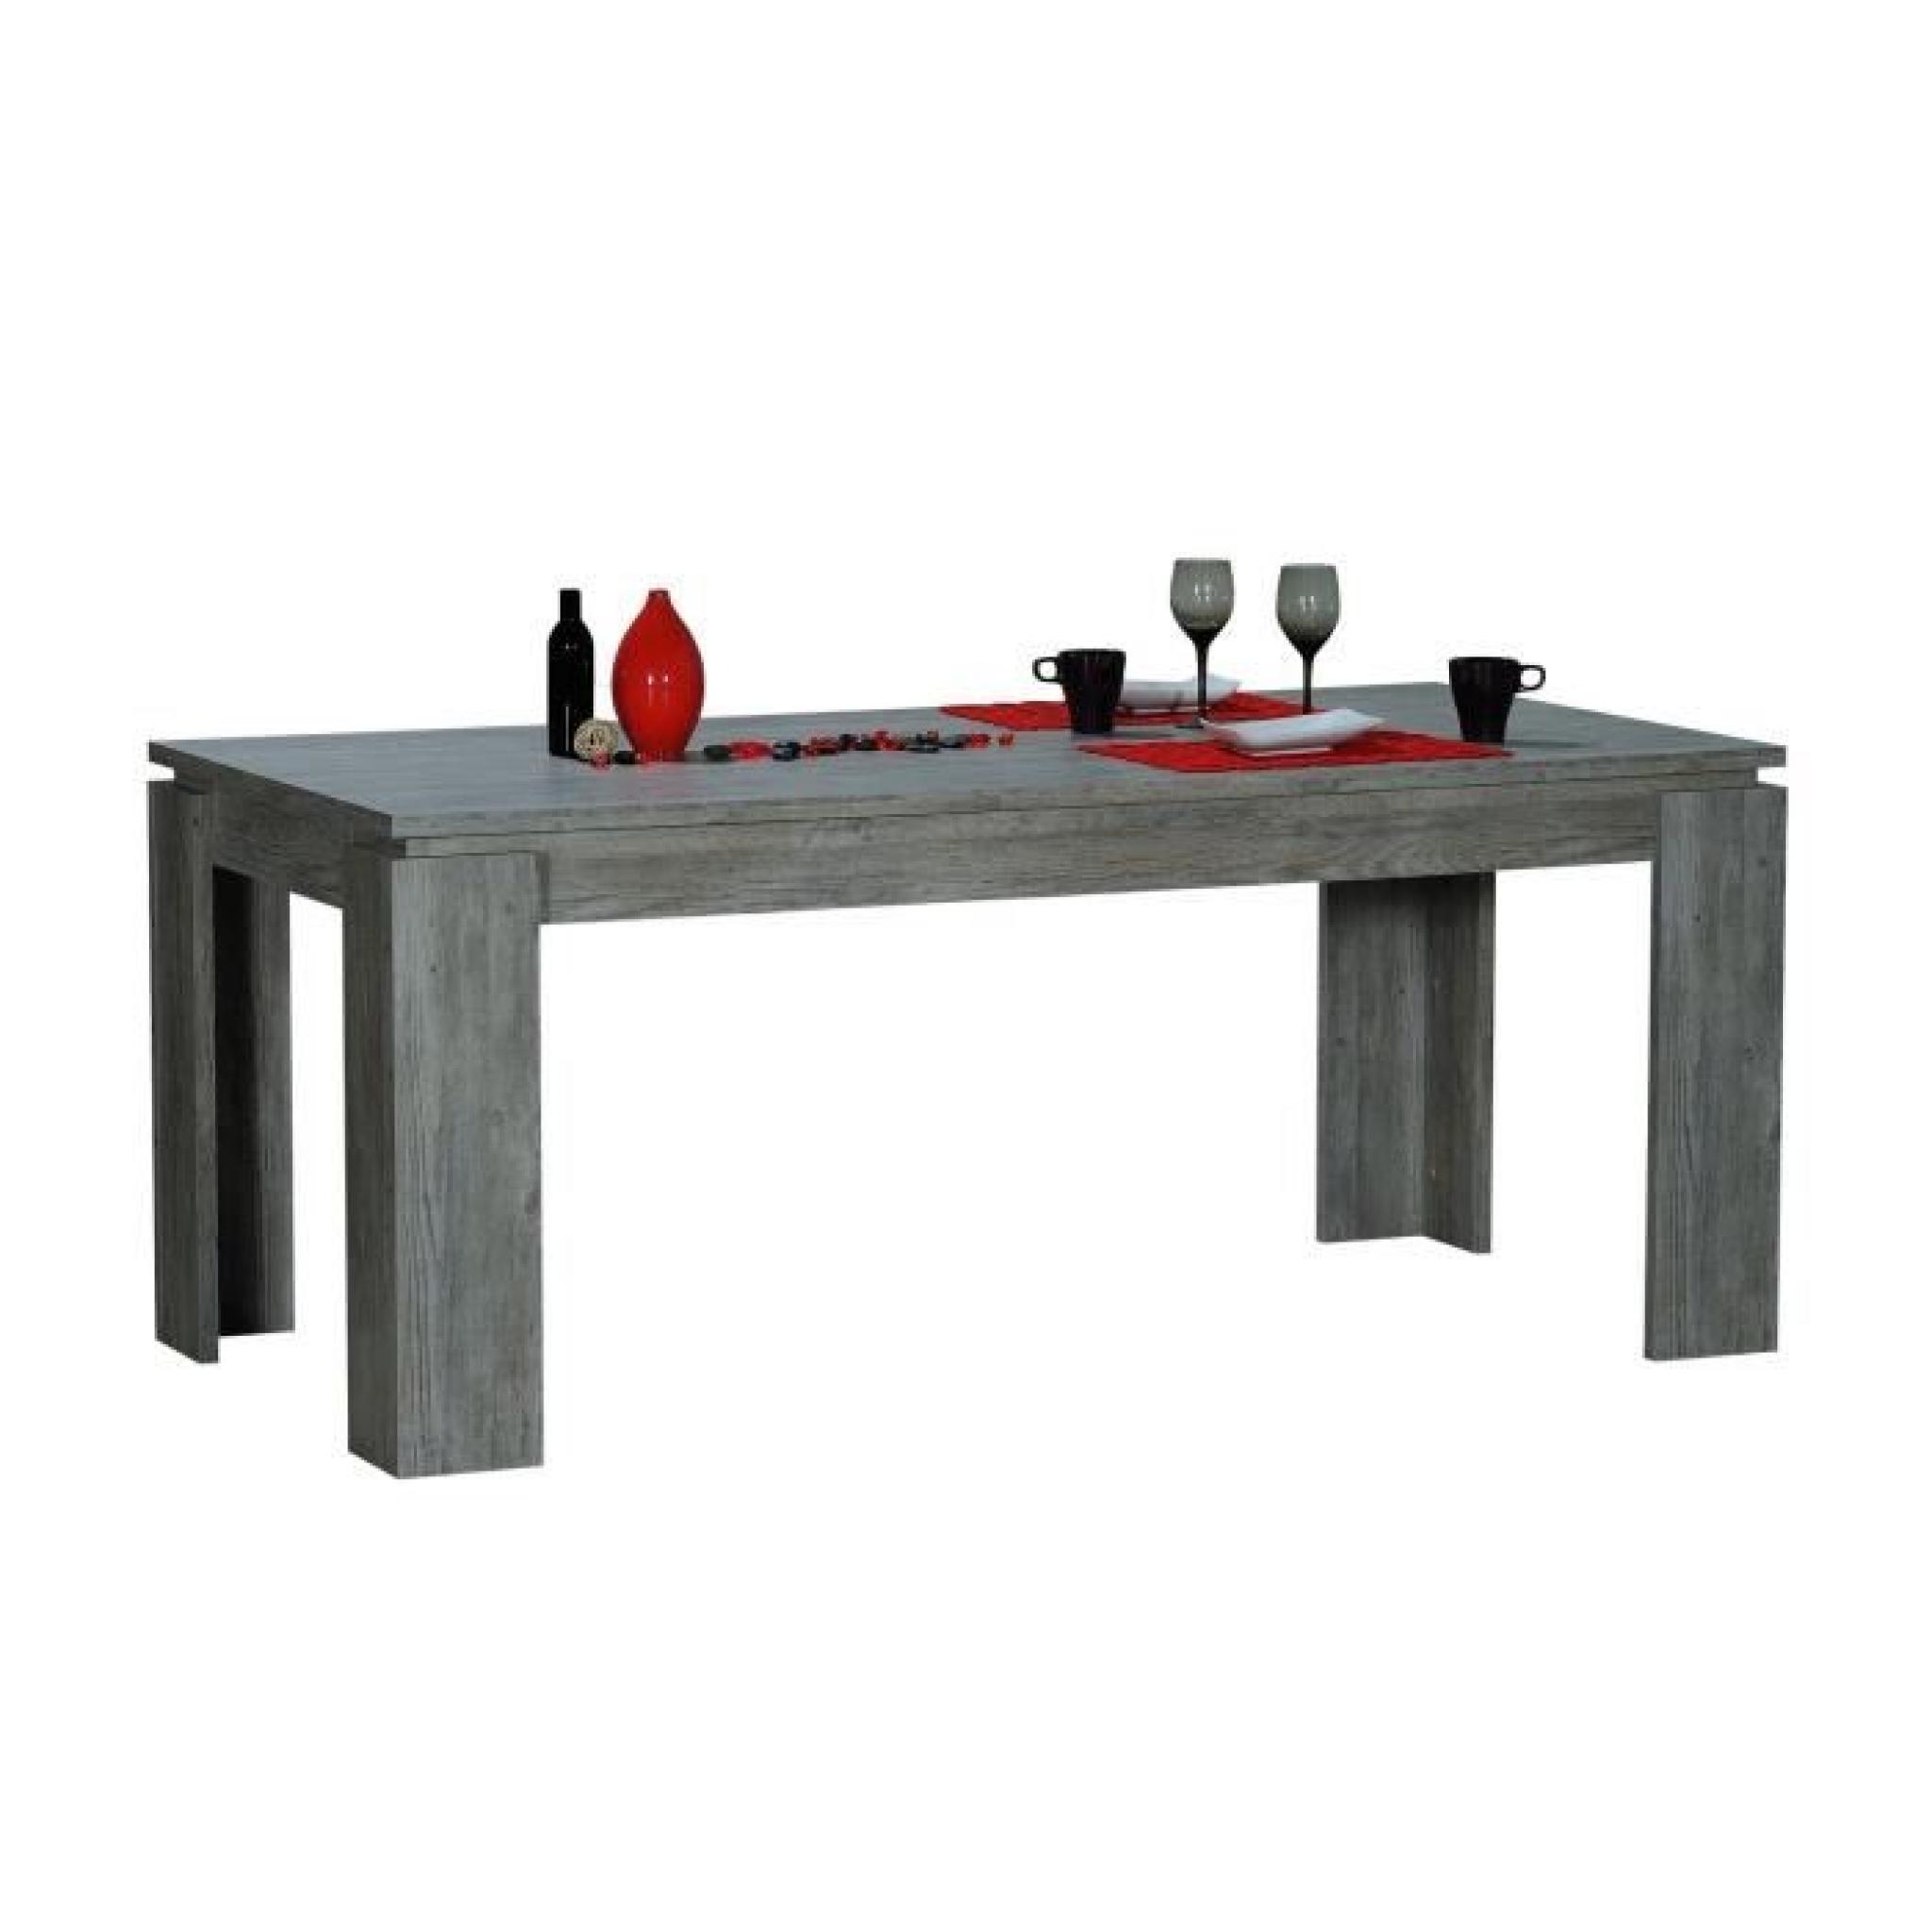 LONDON Table rectangulaire L180 cm gris flotté pas cher